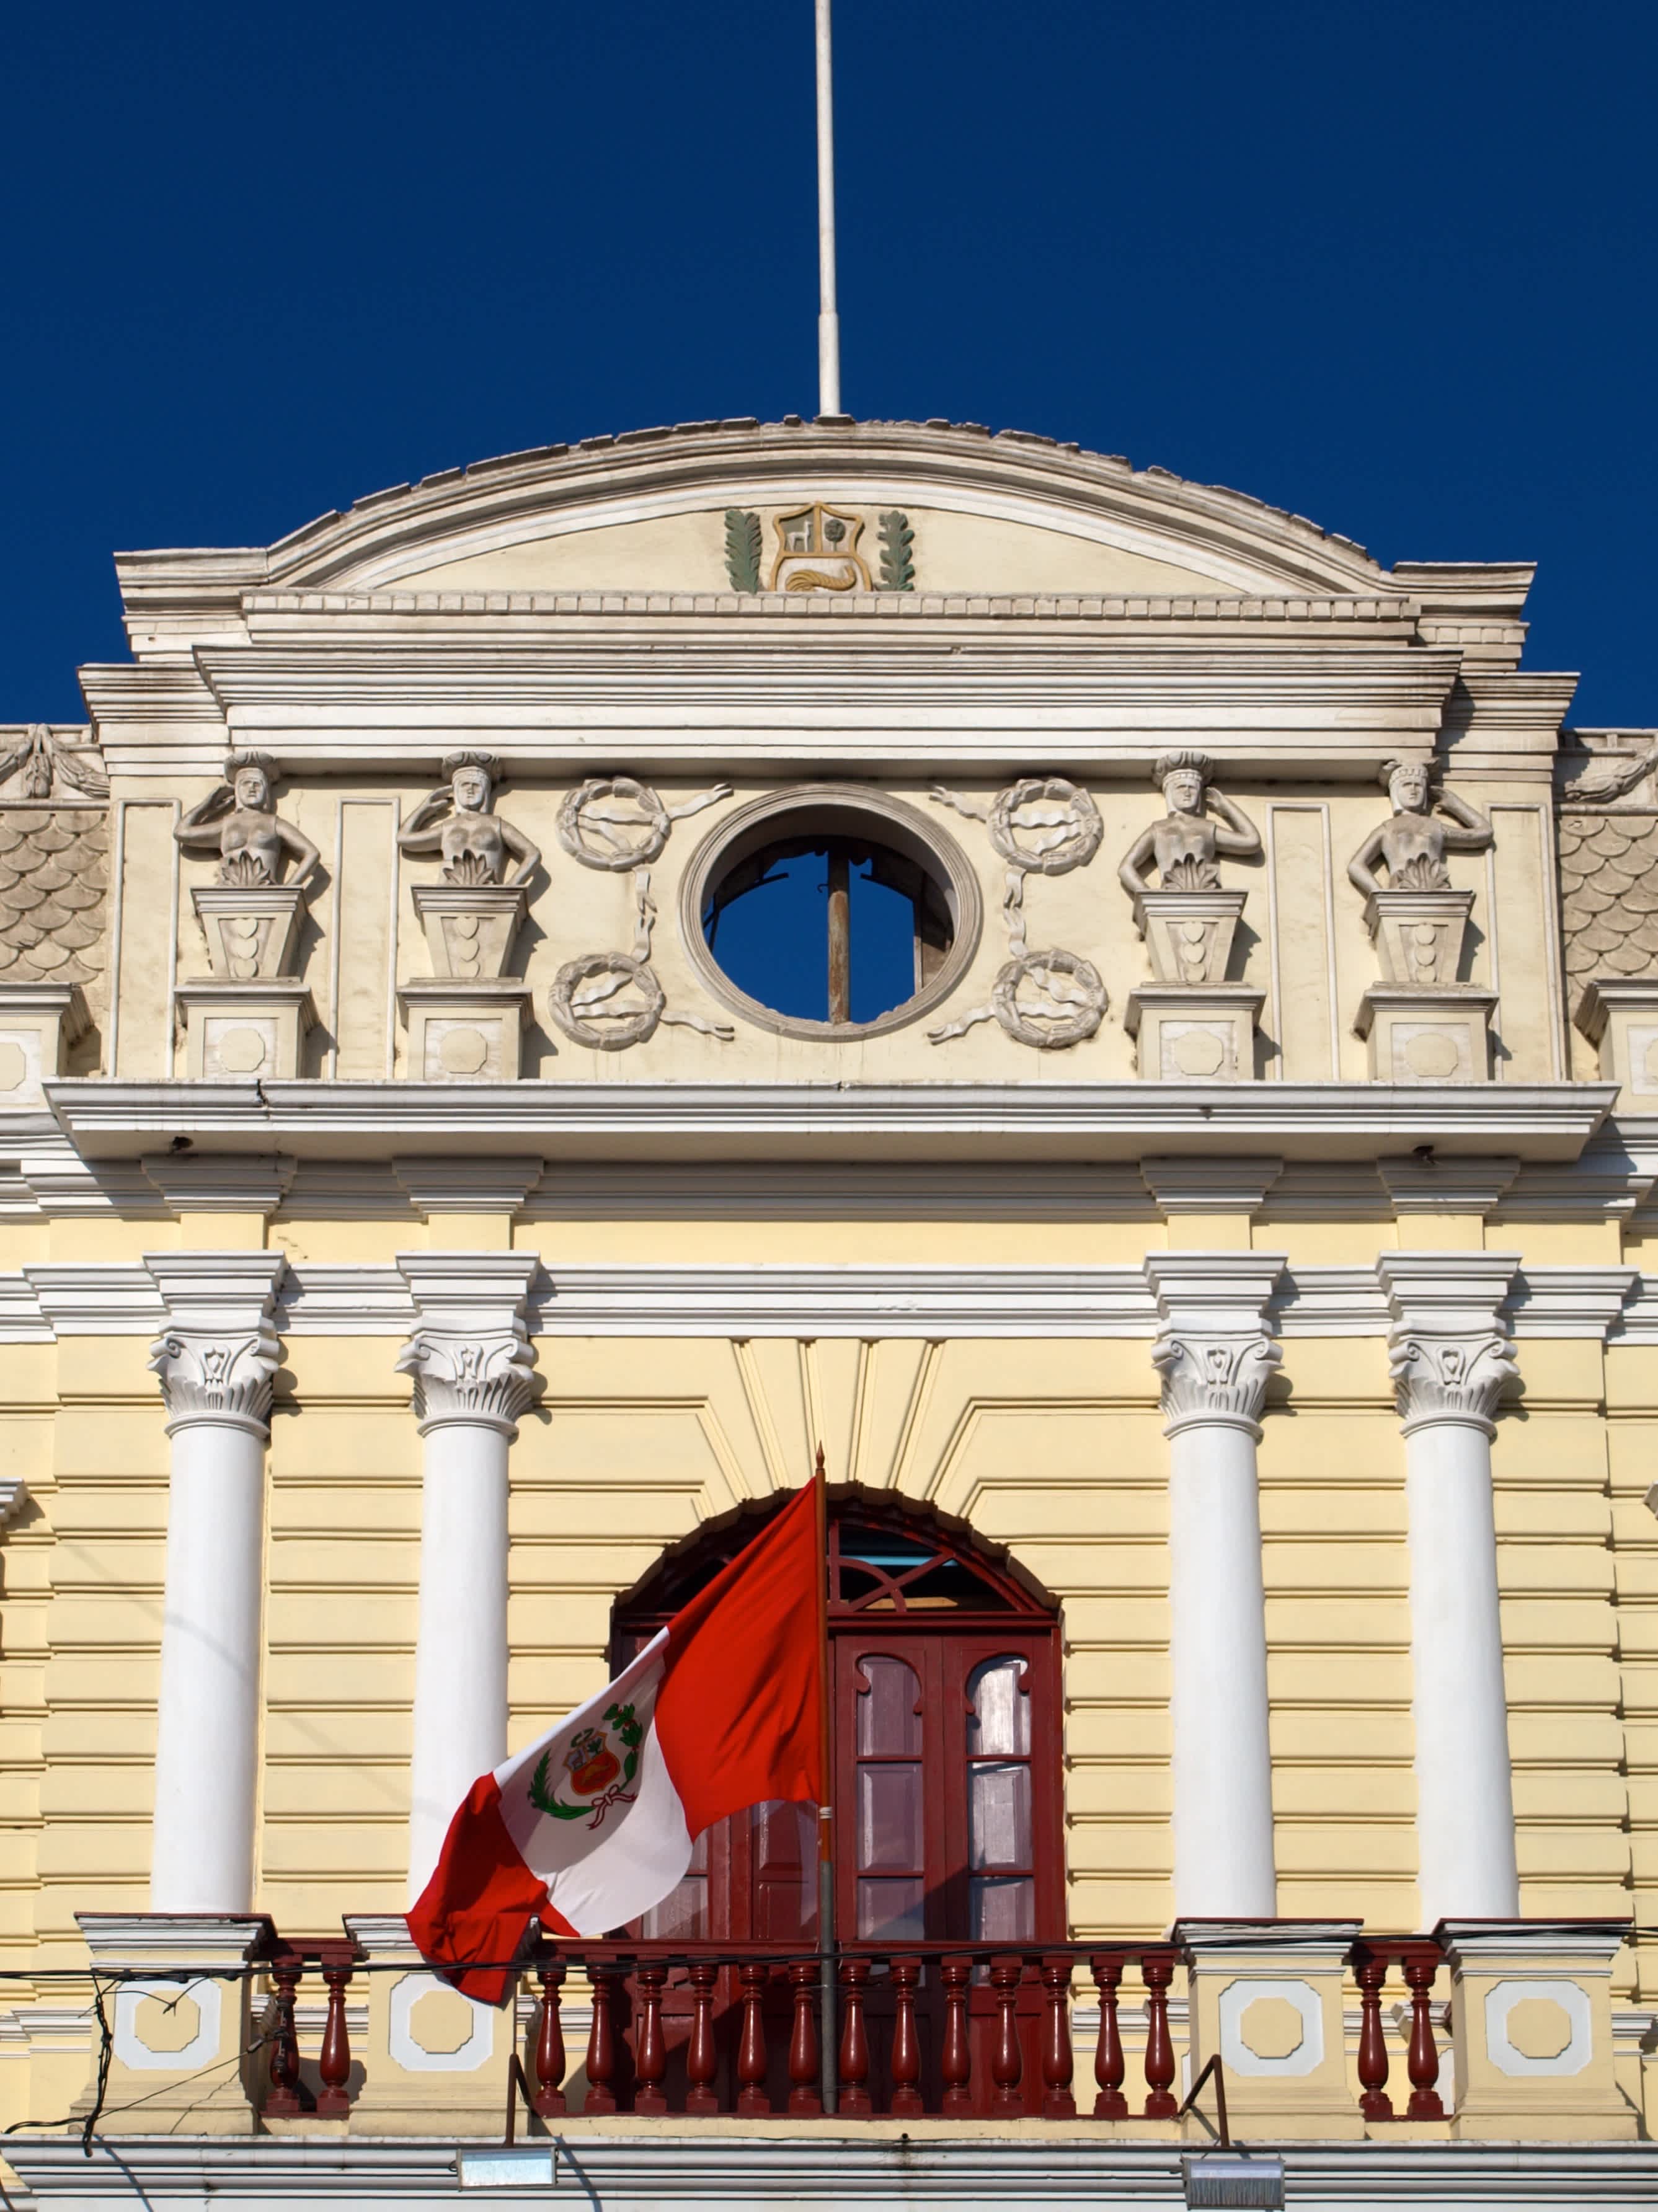  Sanish koloniale Architektur mit peruanischer Flagge